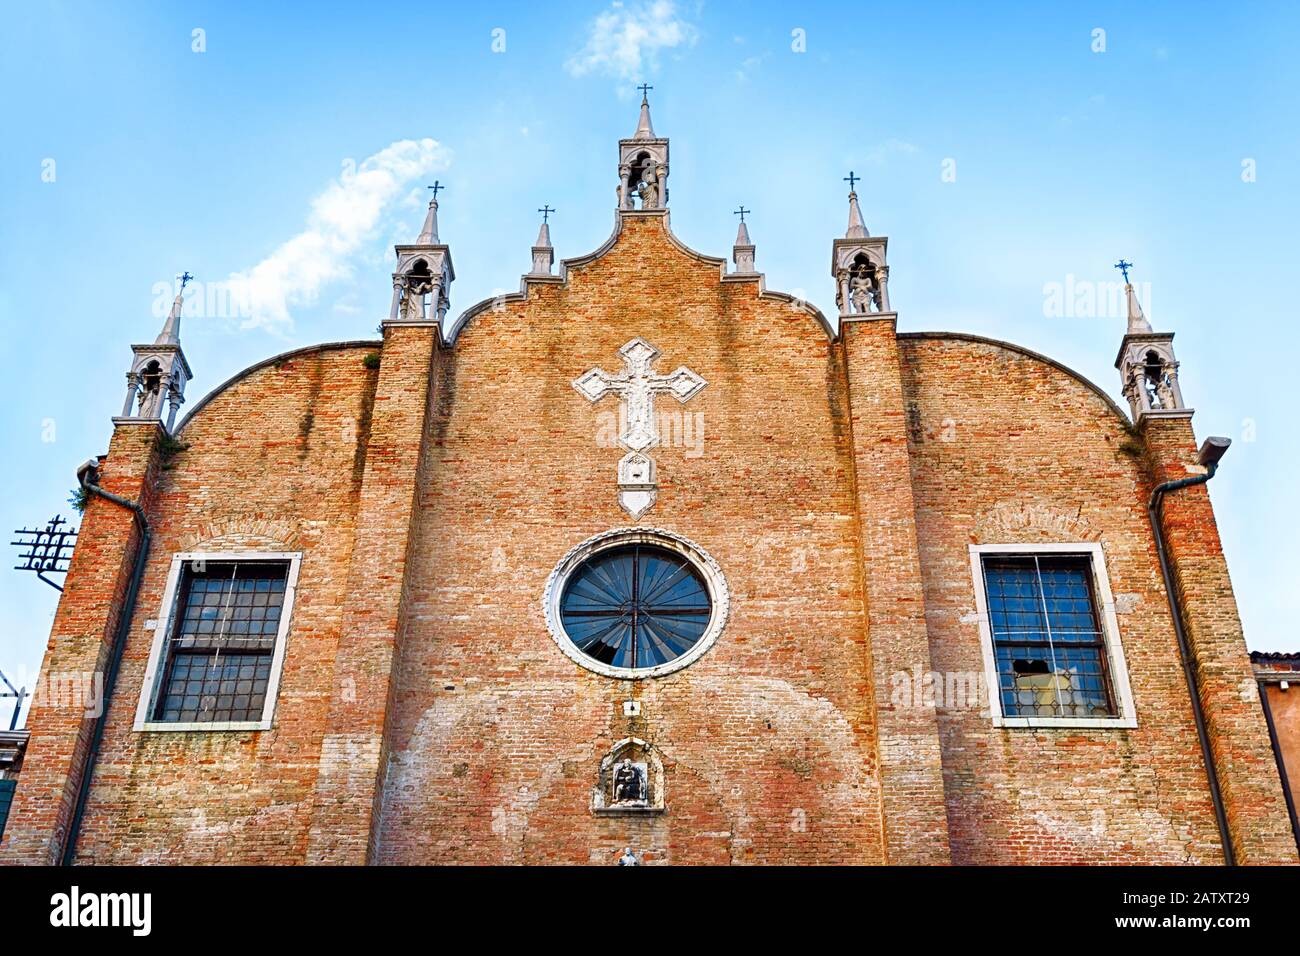 Chiesa Di Sant'Apollinare, Venezia, Italia. È una delle chiese più antiche di Venezia. Facciata d'epoca del vecchio tempio cattolico da vicino. Archi medievali Foto Stock